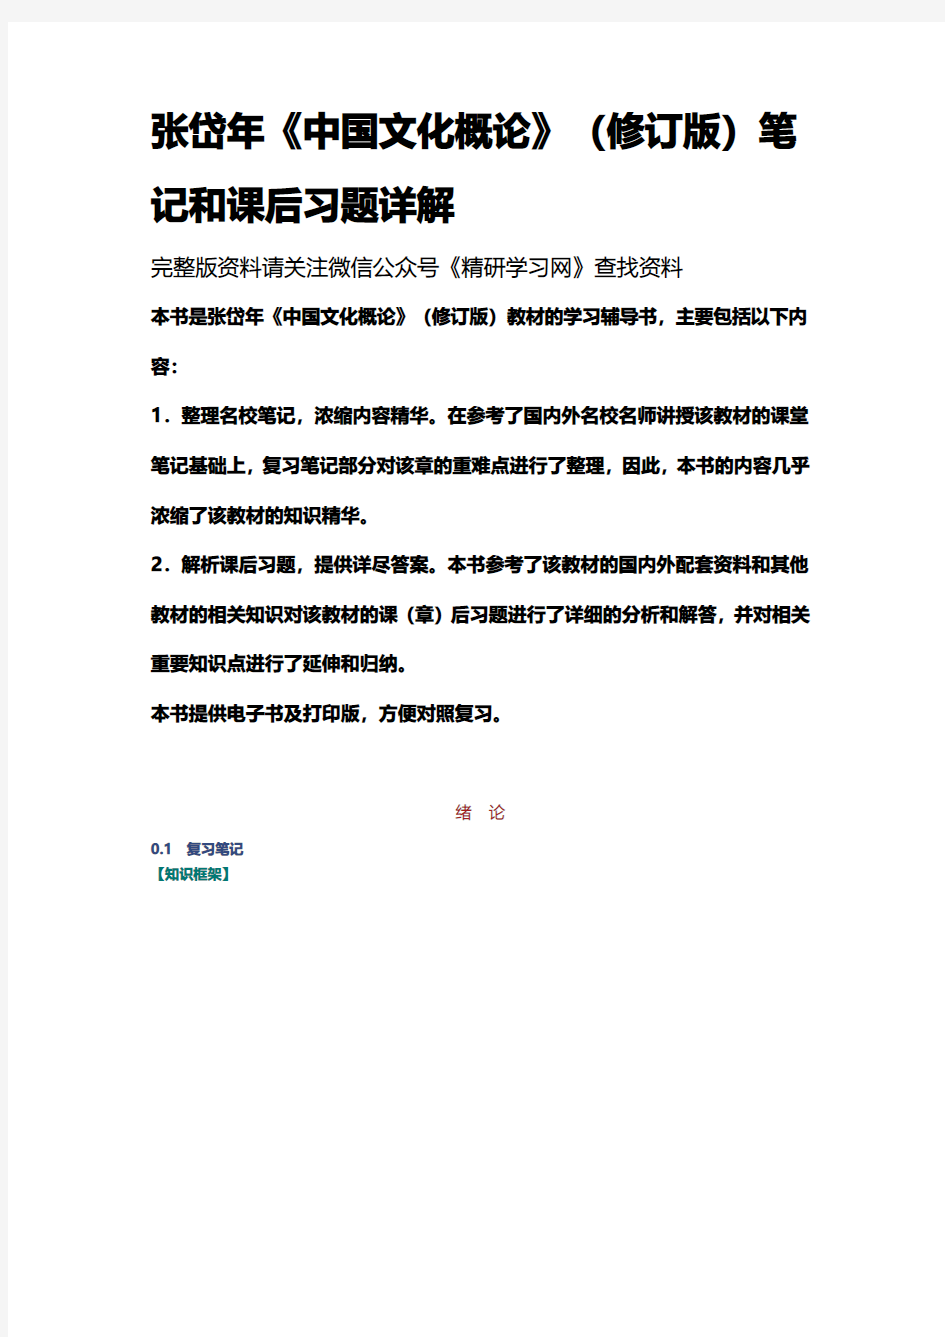 张岱年中国文化概论修订版笔记和课后习题详解资料